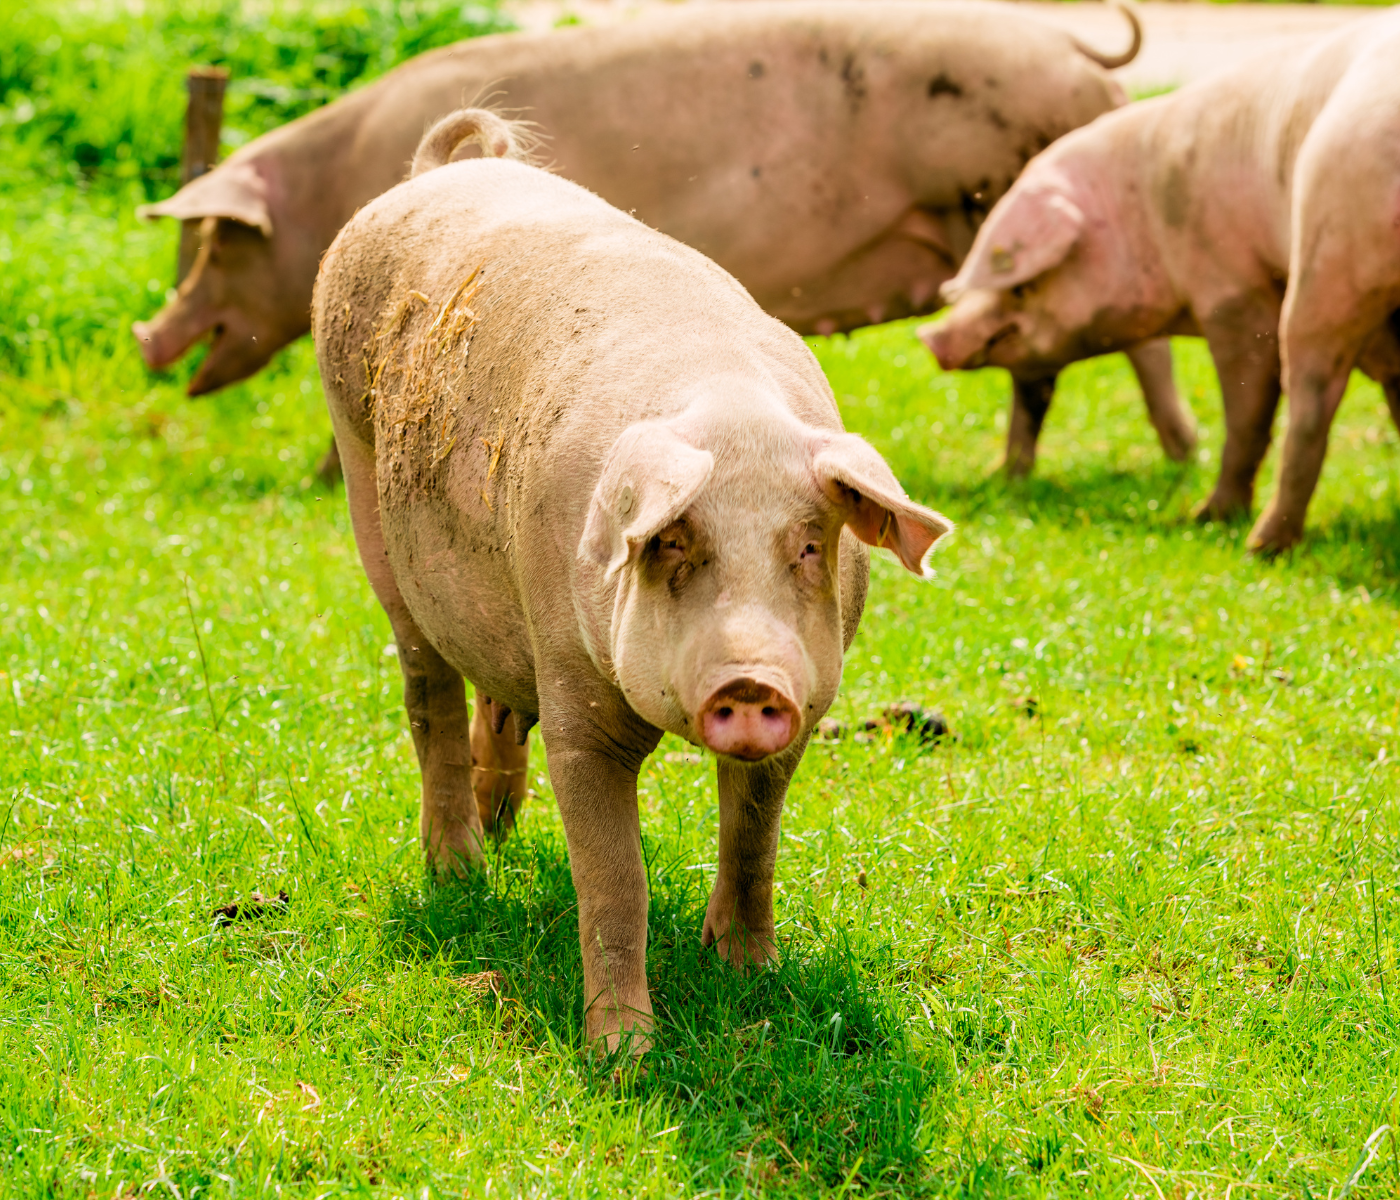 Manejo previo al sacrificio y sus efectos sobre el bienestar animal y la calidad de la carne porcina